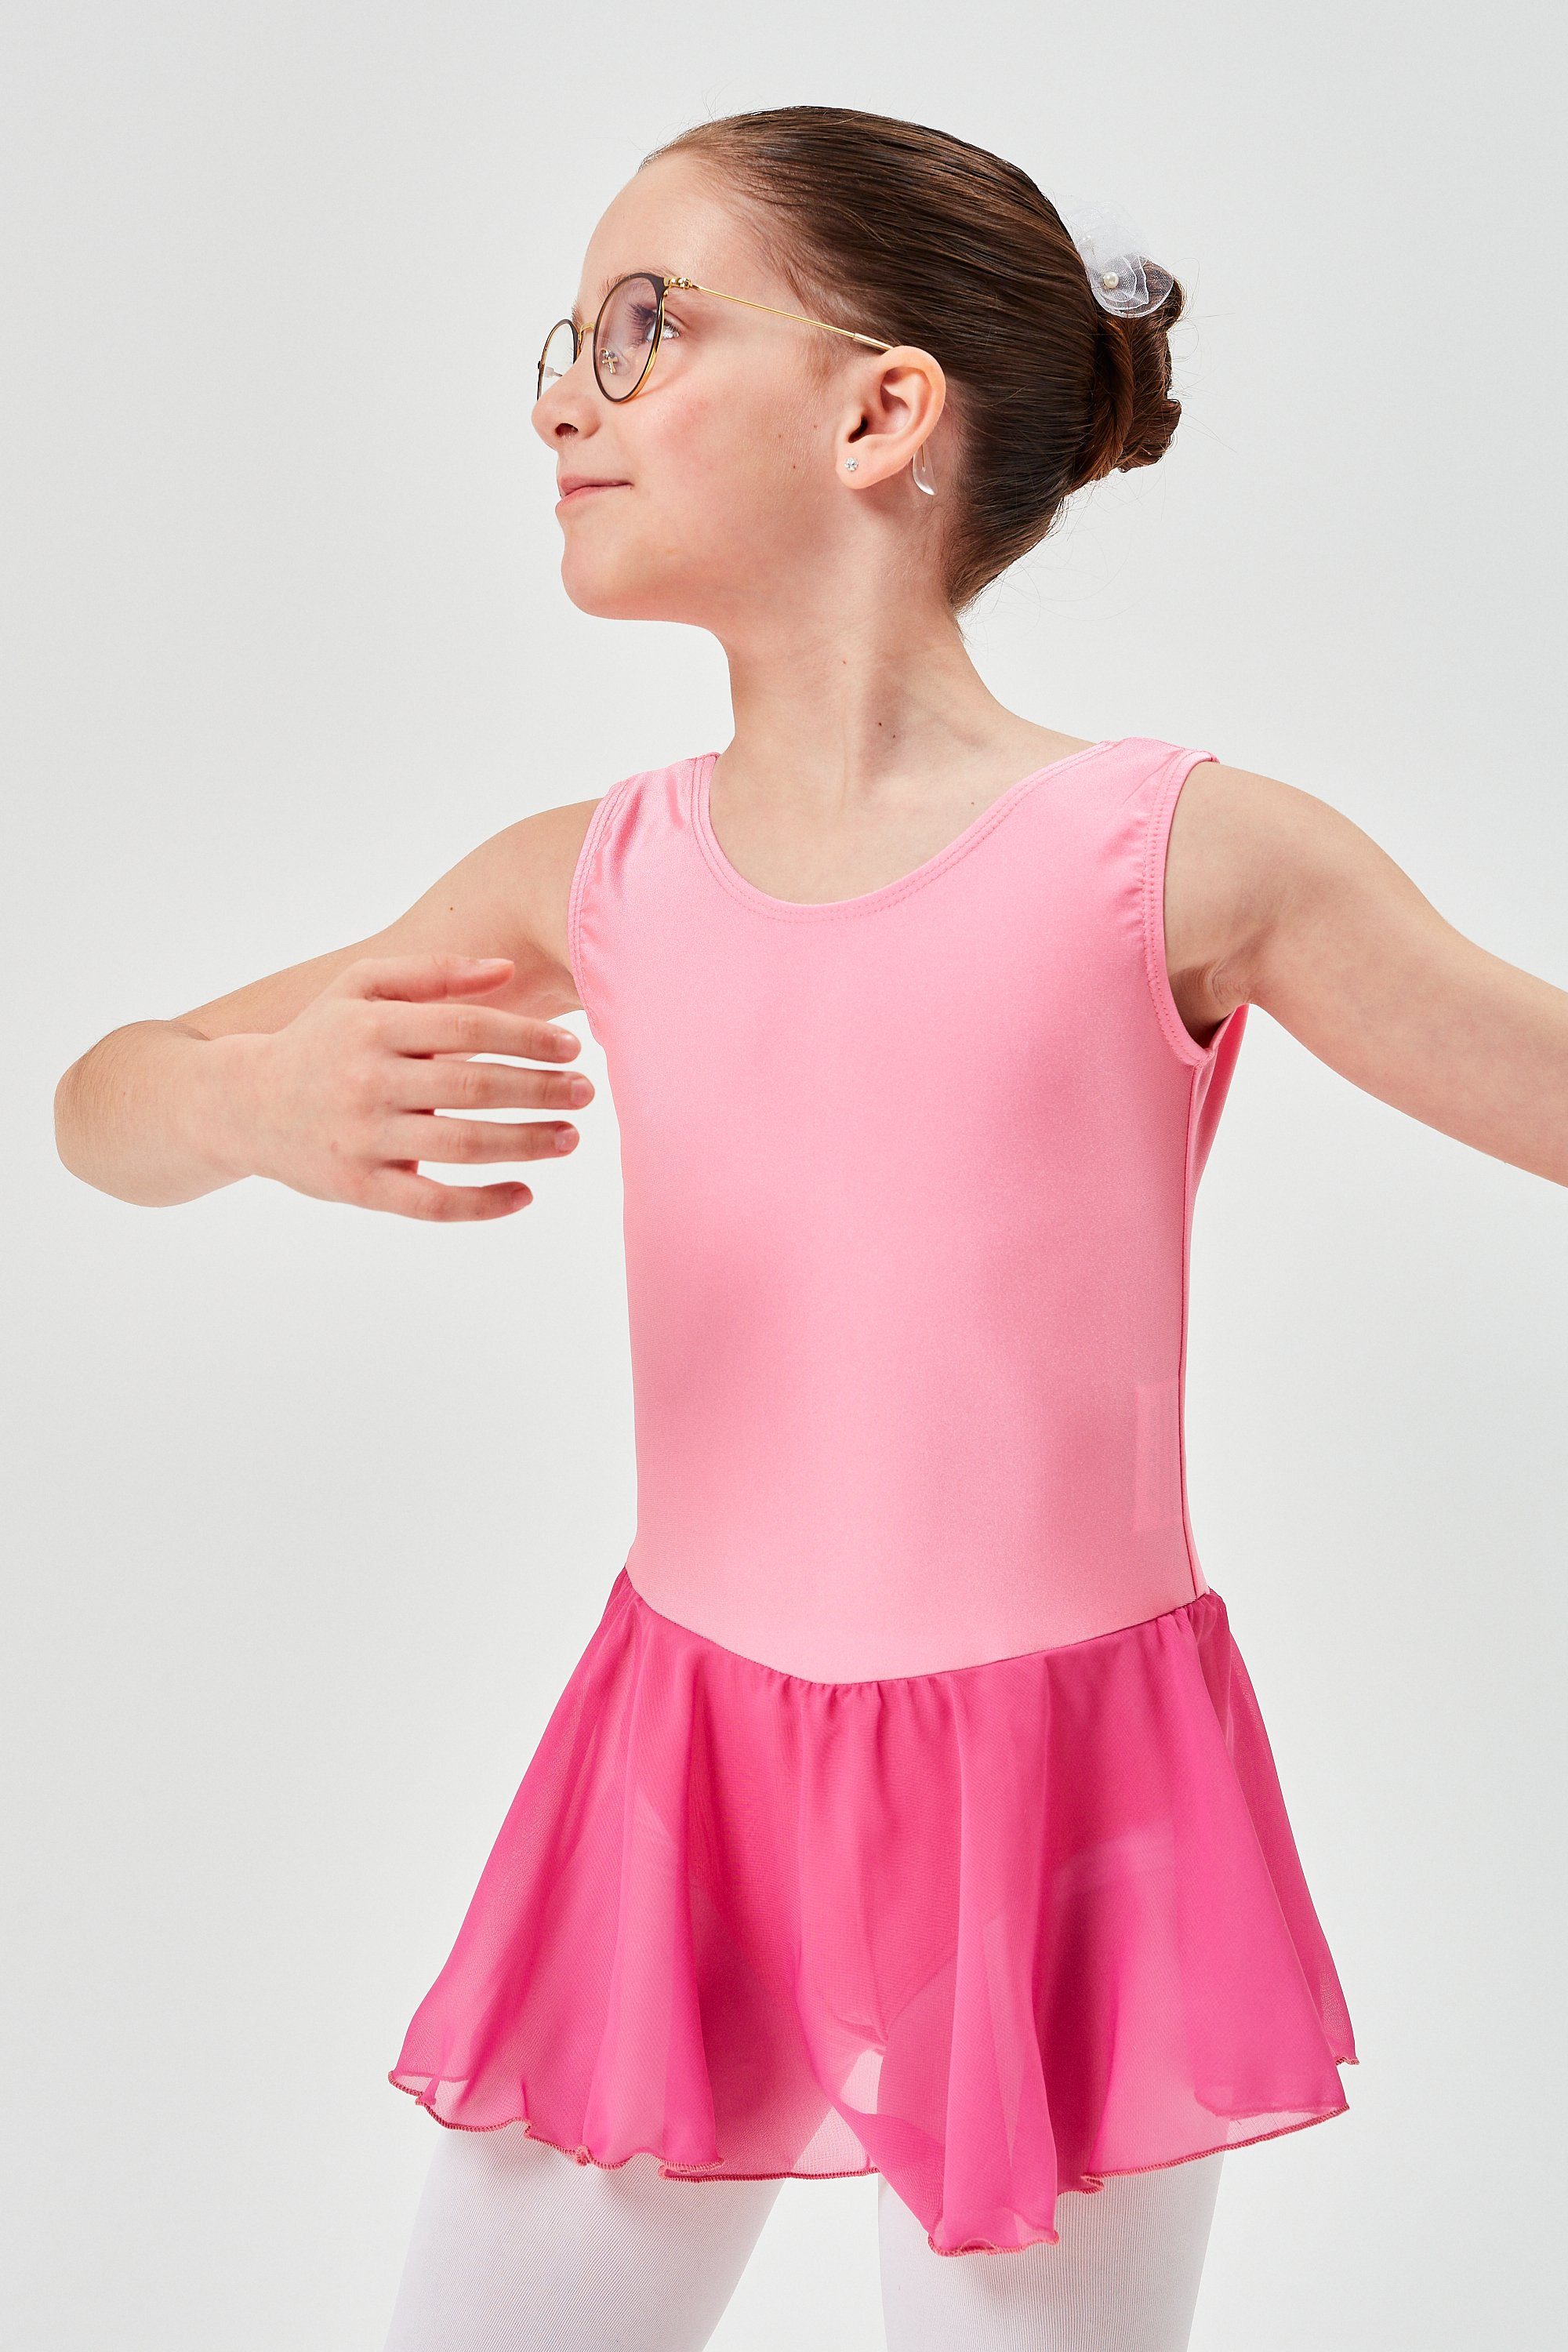 tanzmuster Chiffonkleid Ballettkleid Polly Lycra Trikot glänzendem Mädchen mit für Chiffonrock Ballett aus altrosa